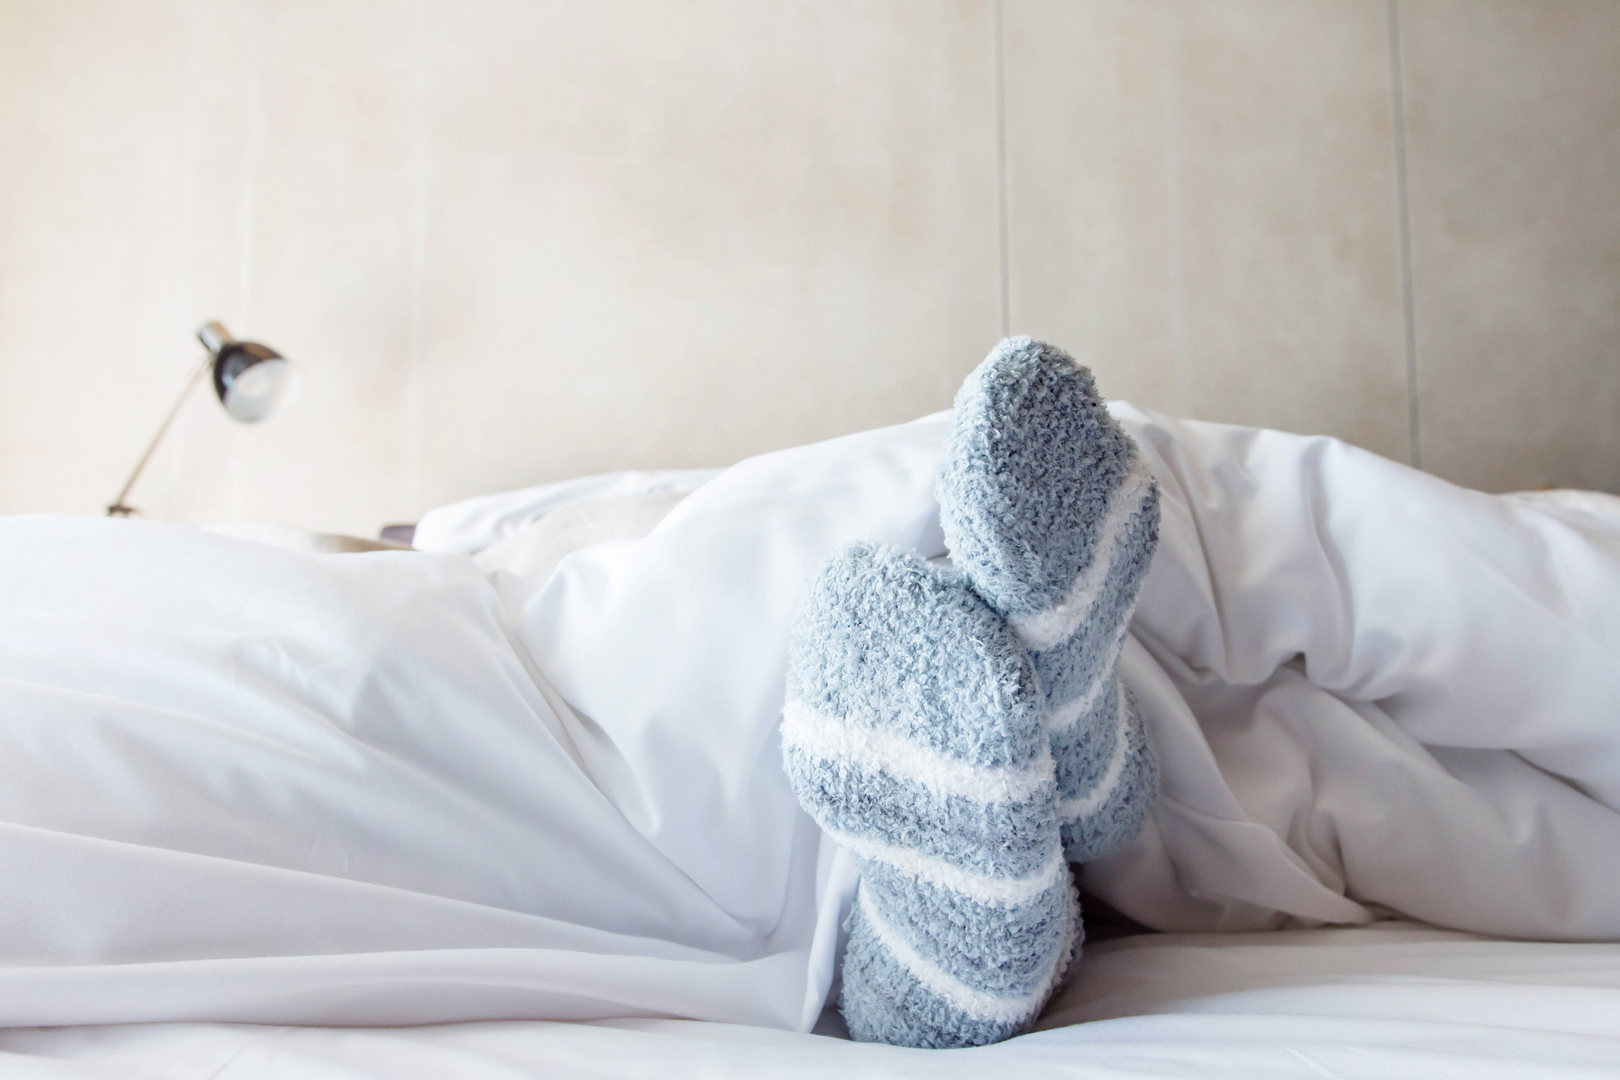 ثلاثة مخاطر صحية يمكن أن يسببها النوم مع ارتداء الجوارب